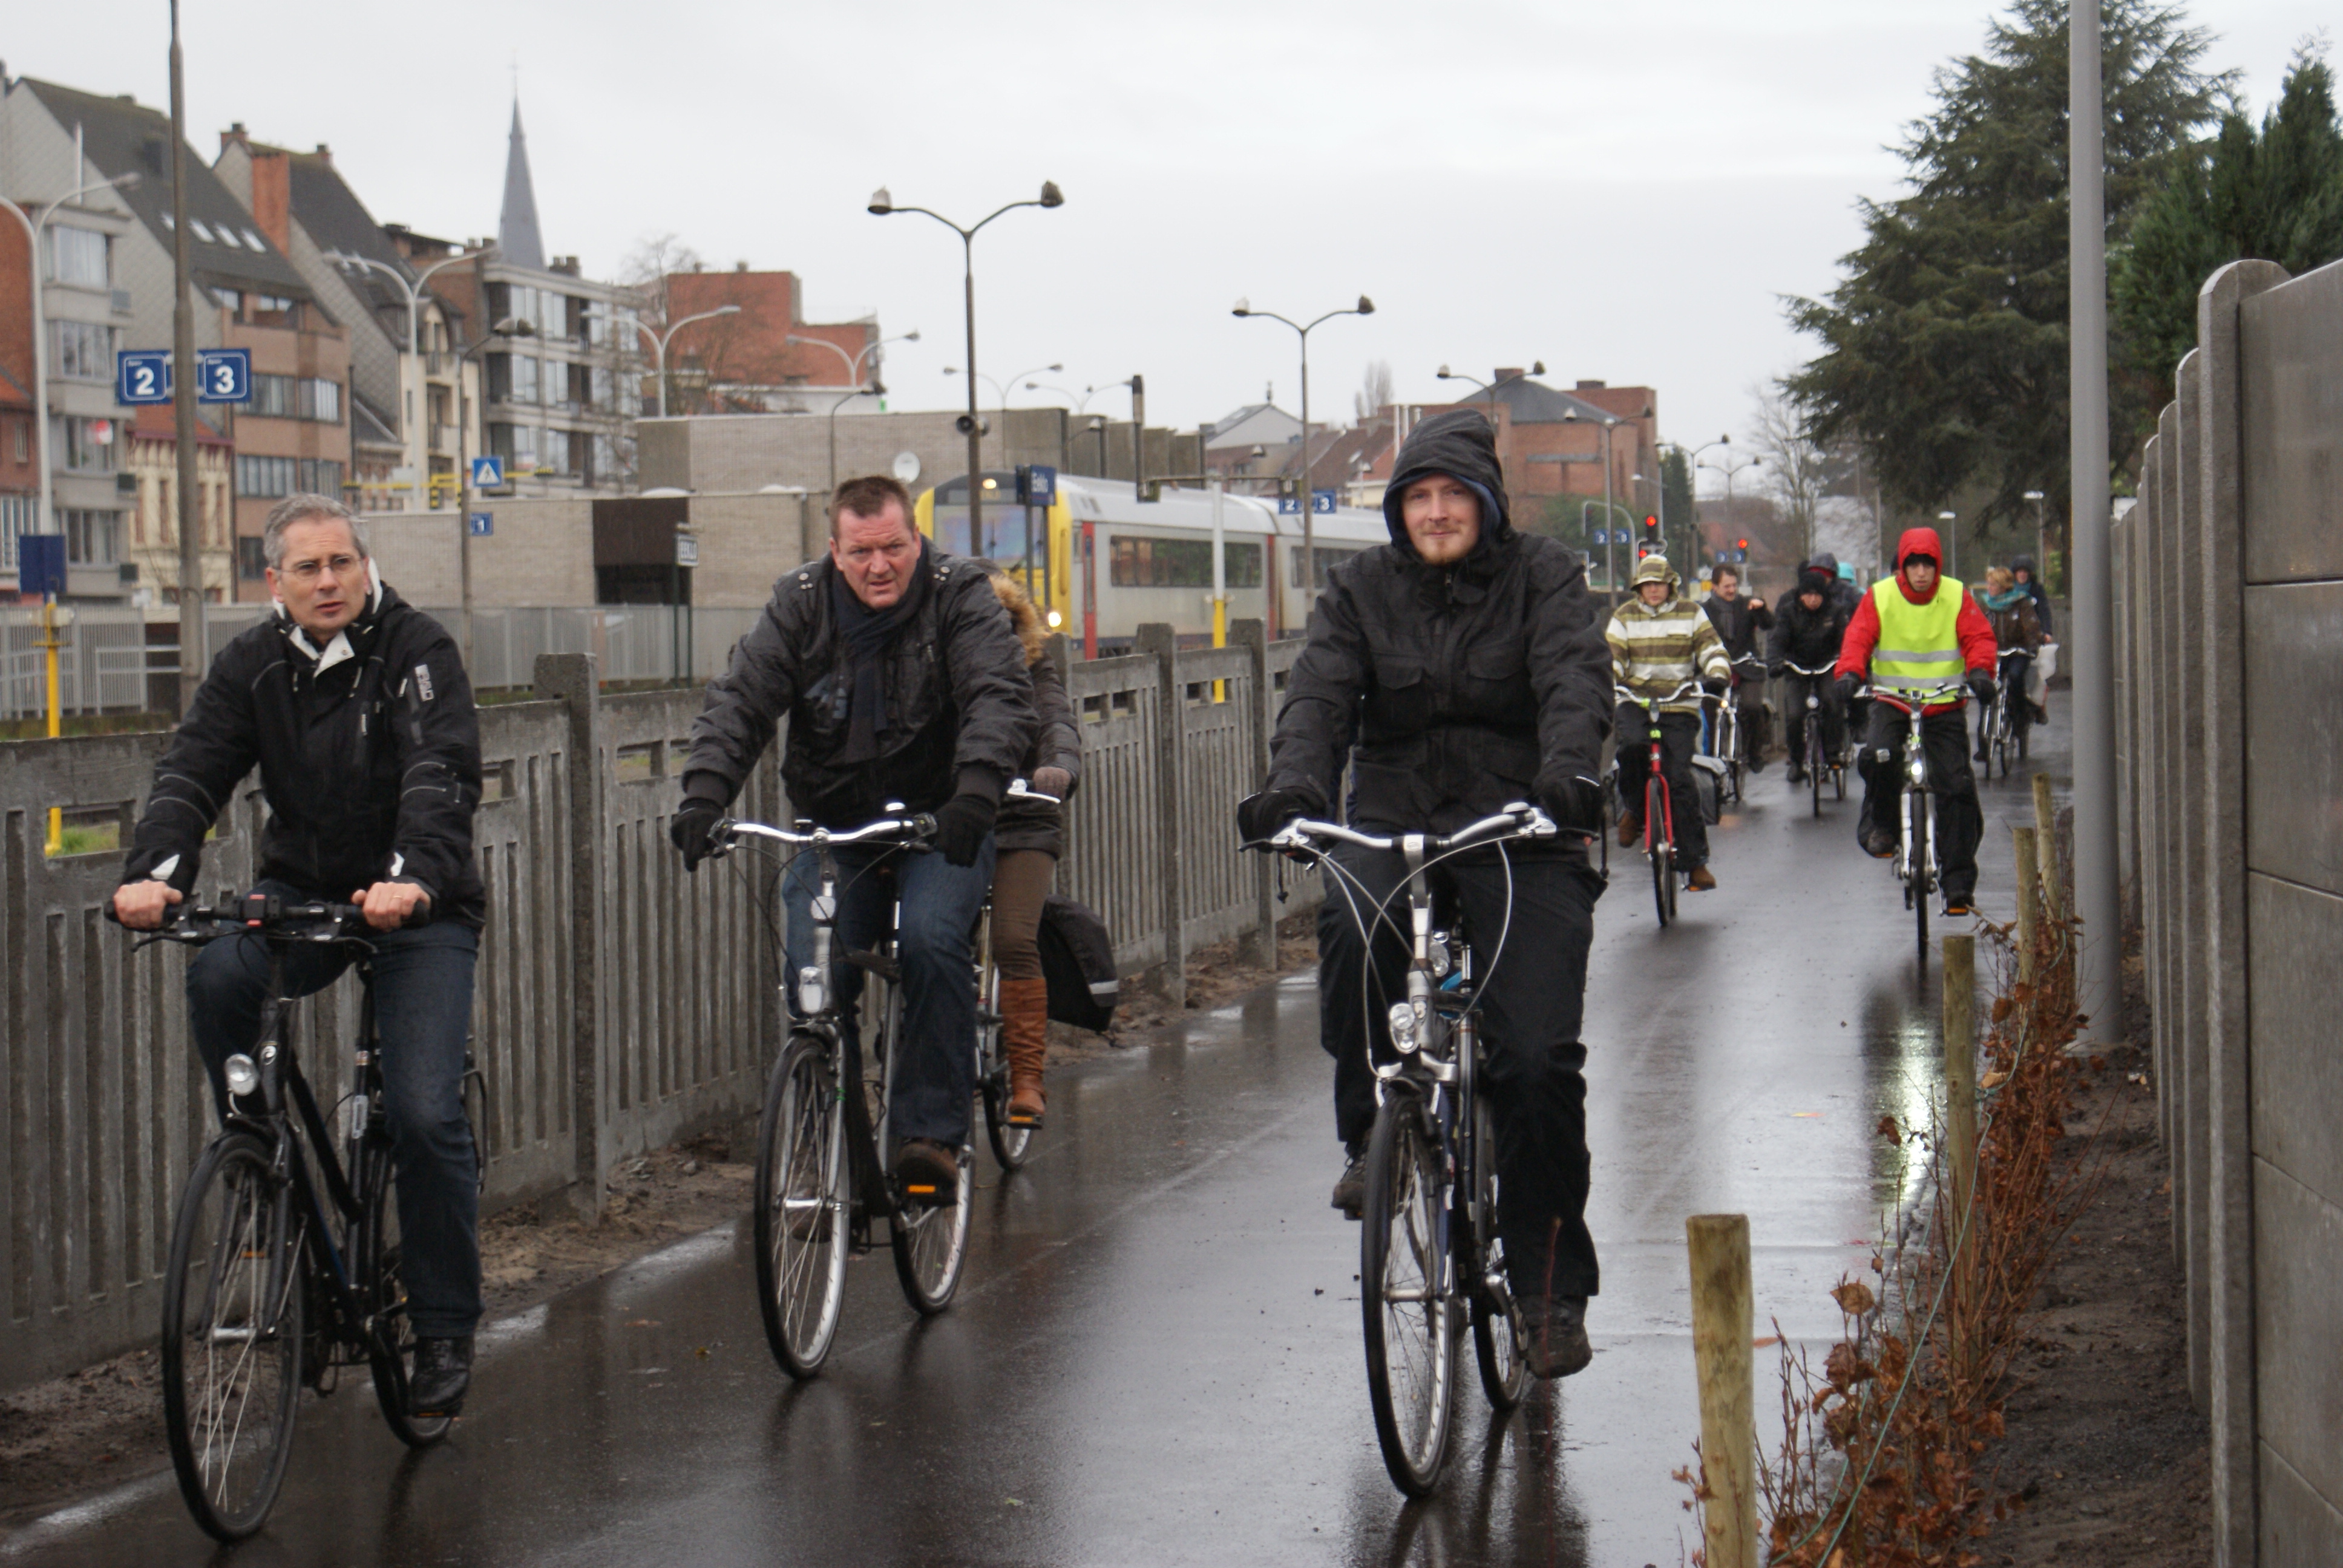 Inhuldiging fietspad langs de spoorweg in Eeklo ... een voorbeeld van goede infrastructuur